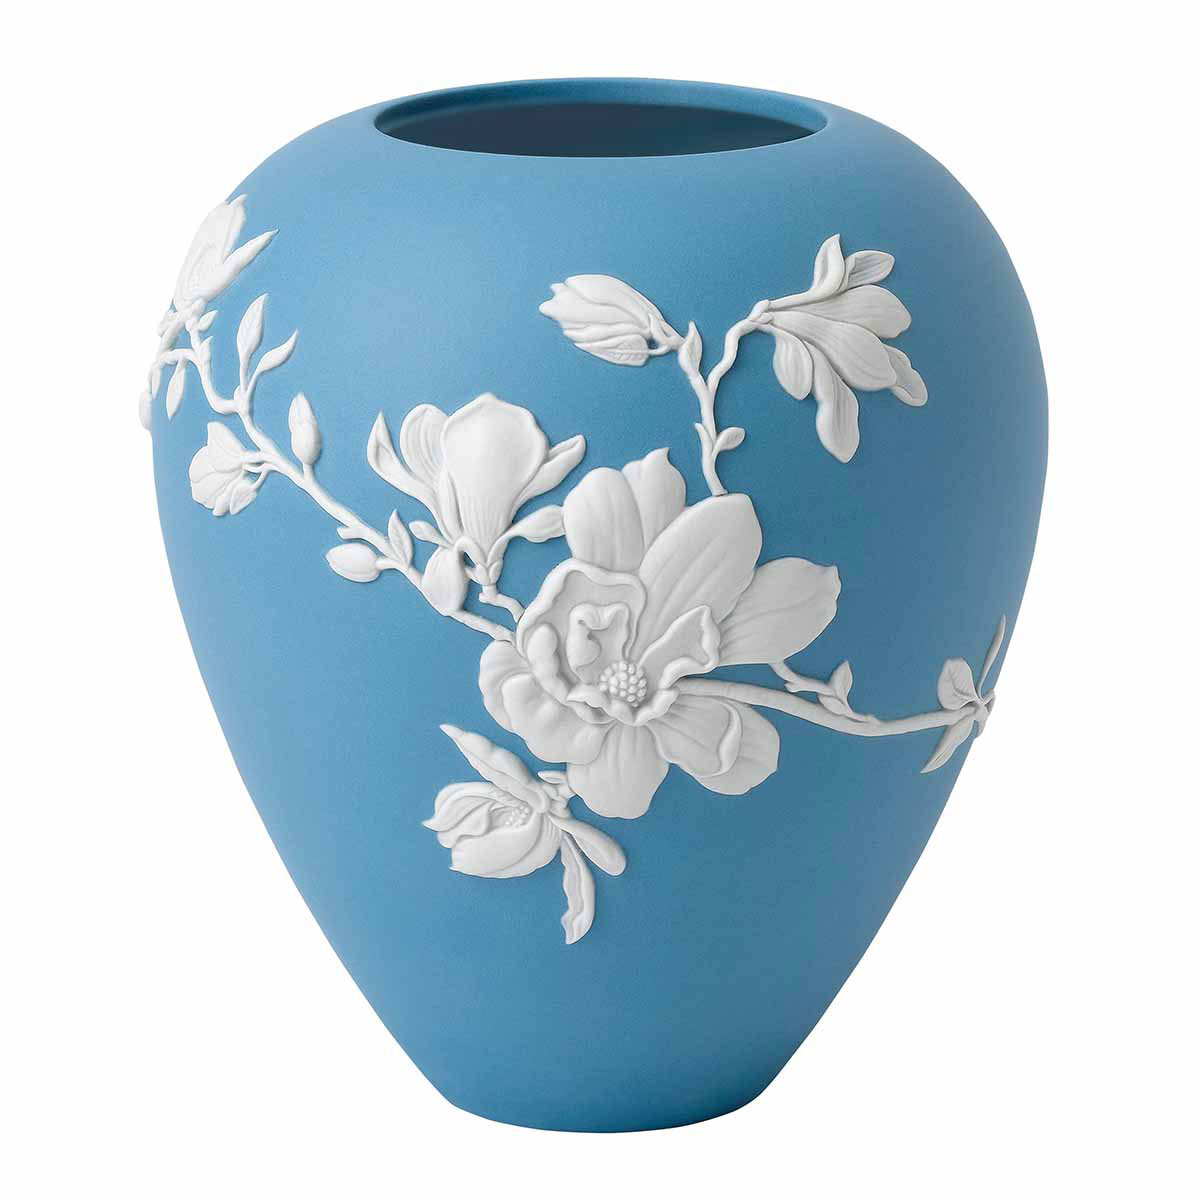 Wedgwood Magnolia Blossom 7" Vase